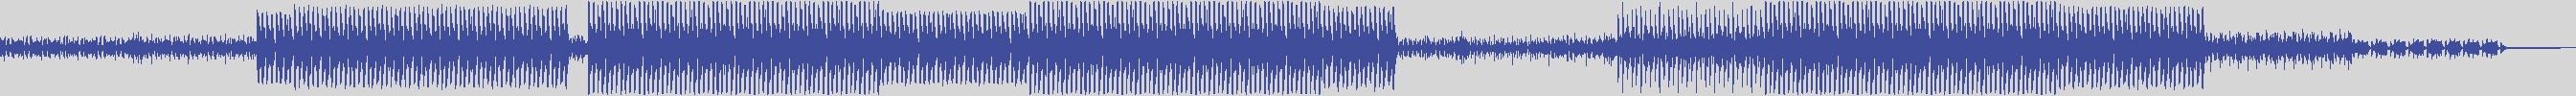 nf_boyz_records [NFY015] Dj Pongo - Disco Blanco [Tribal Move Mix] audio wave form